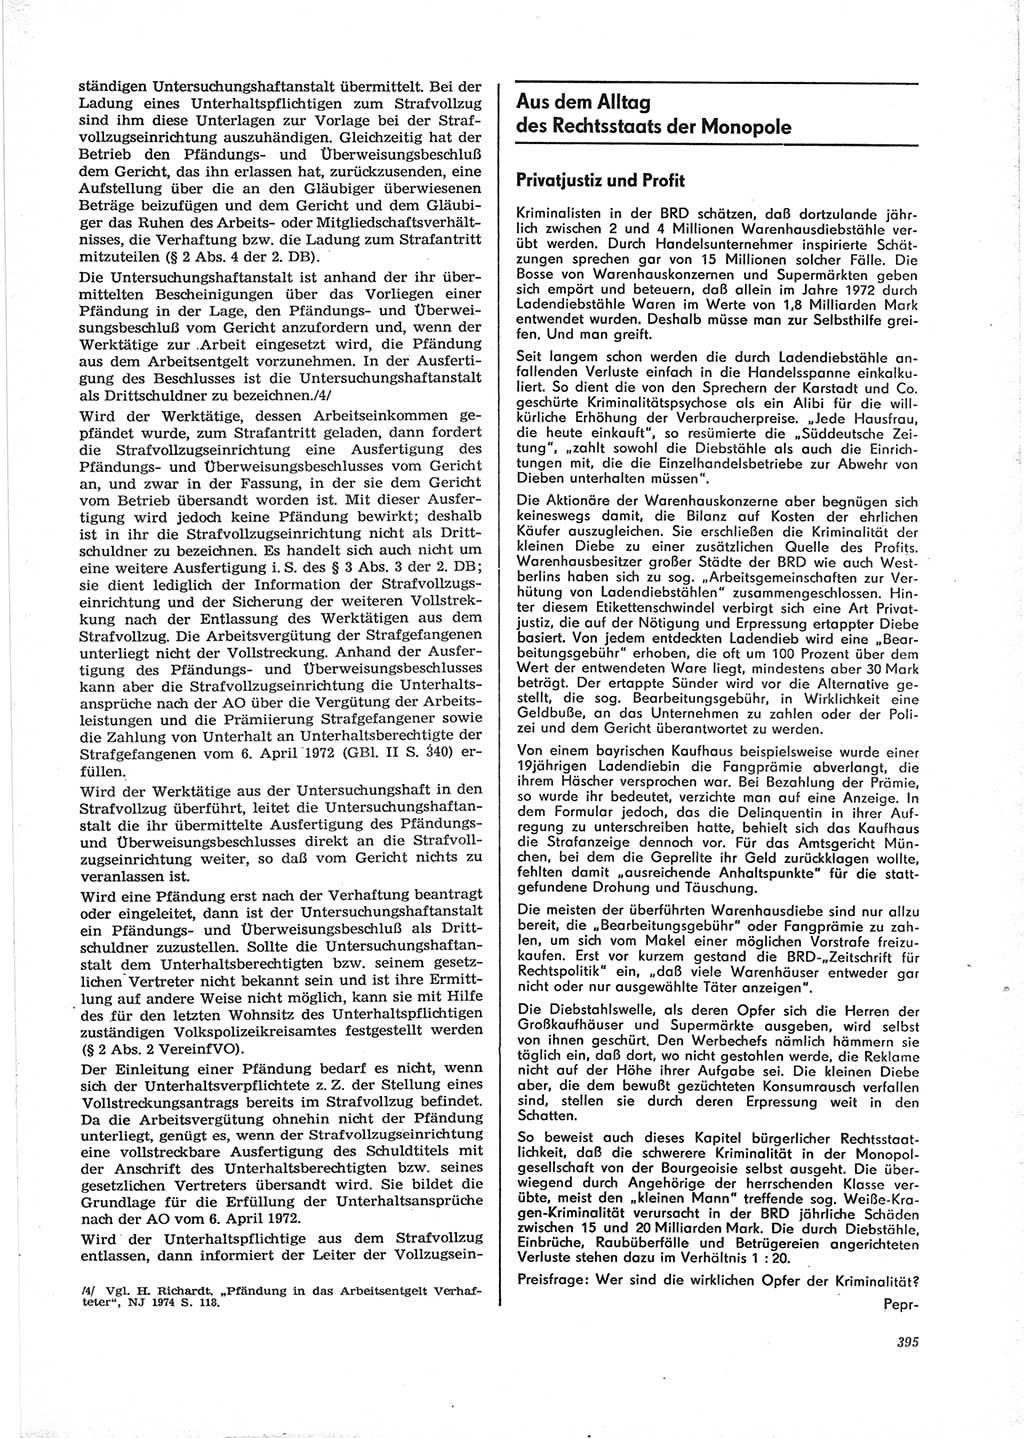 Neue Justiz (NJ), Zeitschrift für Recht und Rechtswissenschaft [Deutsche Demokratische Republik (DDR)], 28. Jahrgang 1974, Seite 395 (NJ DDR 1974, S. 395)